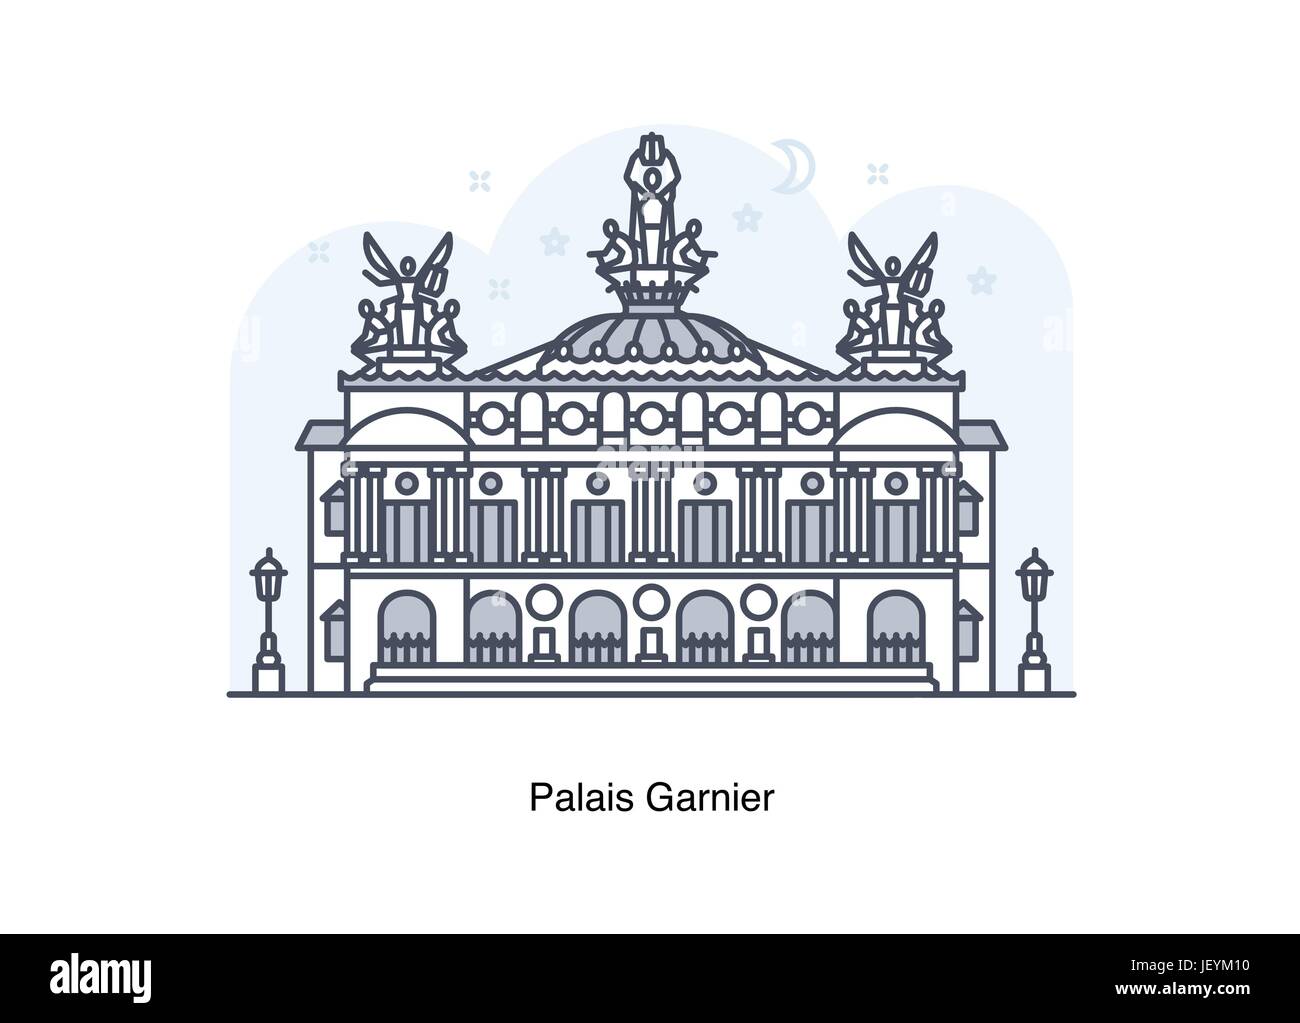 Vektor-Illustration der Linie der Palais Garnier / Paris Opera House, Frankreich. Stock Vektor